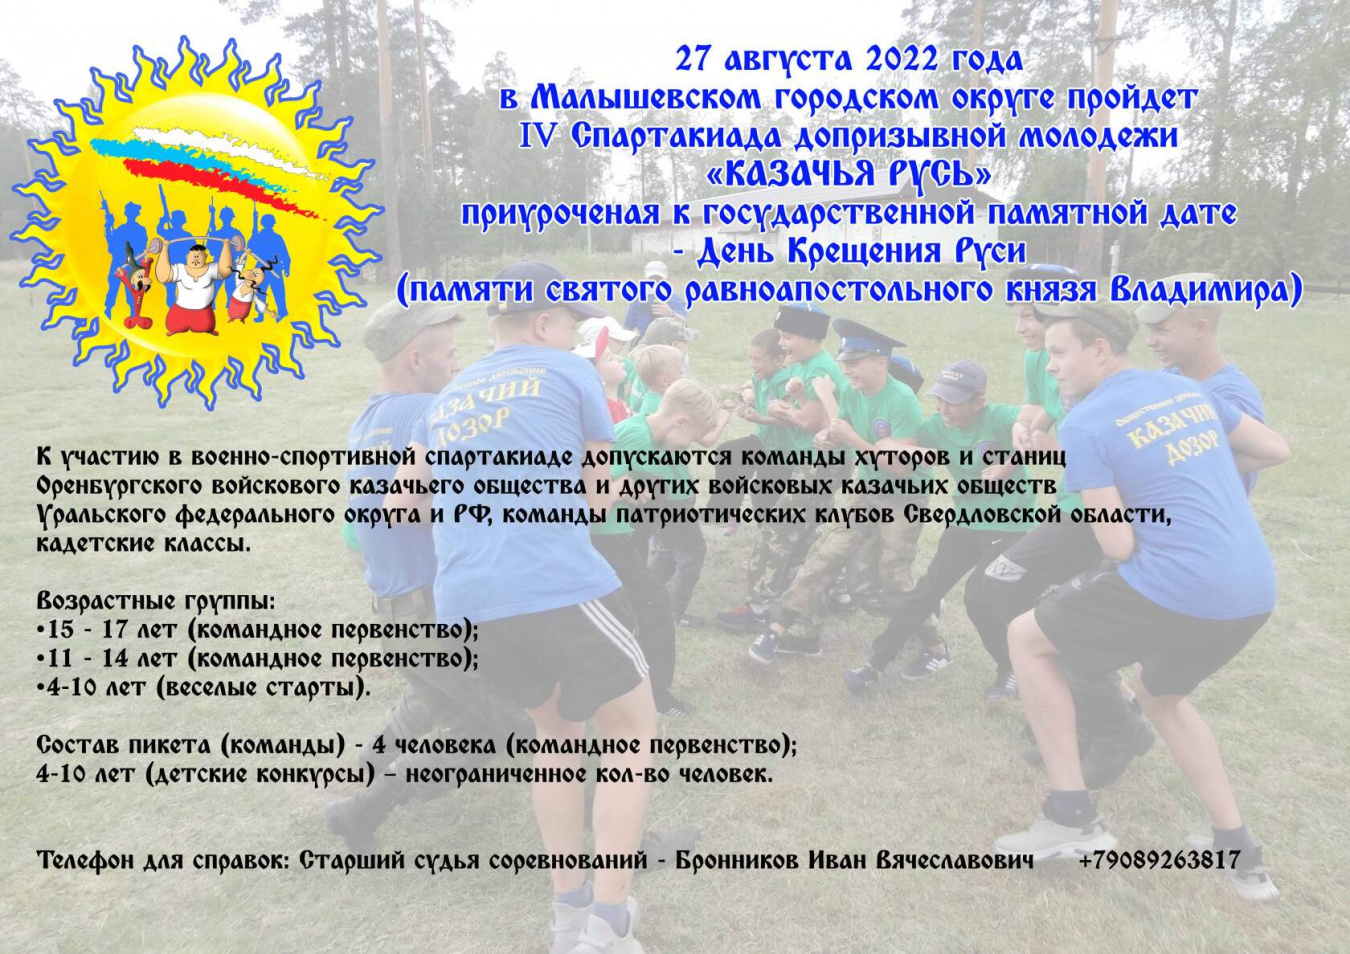 В Свердловской области пройдет спартакиада для казачьей молодежи